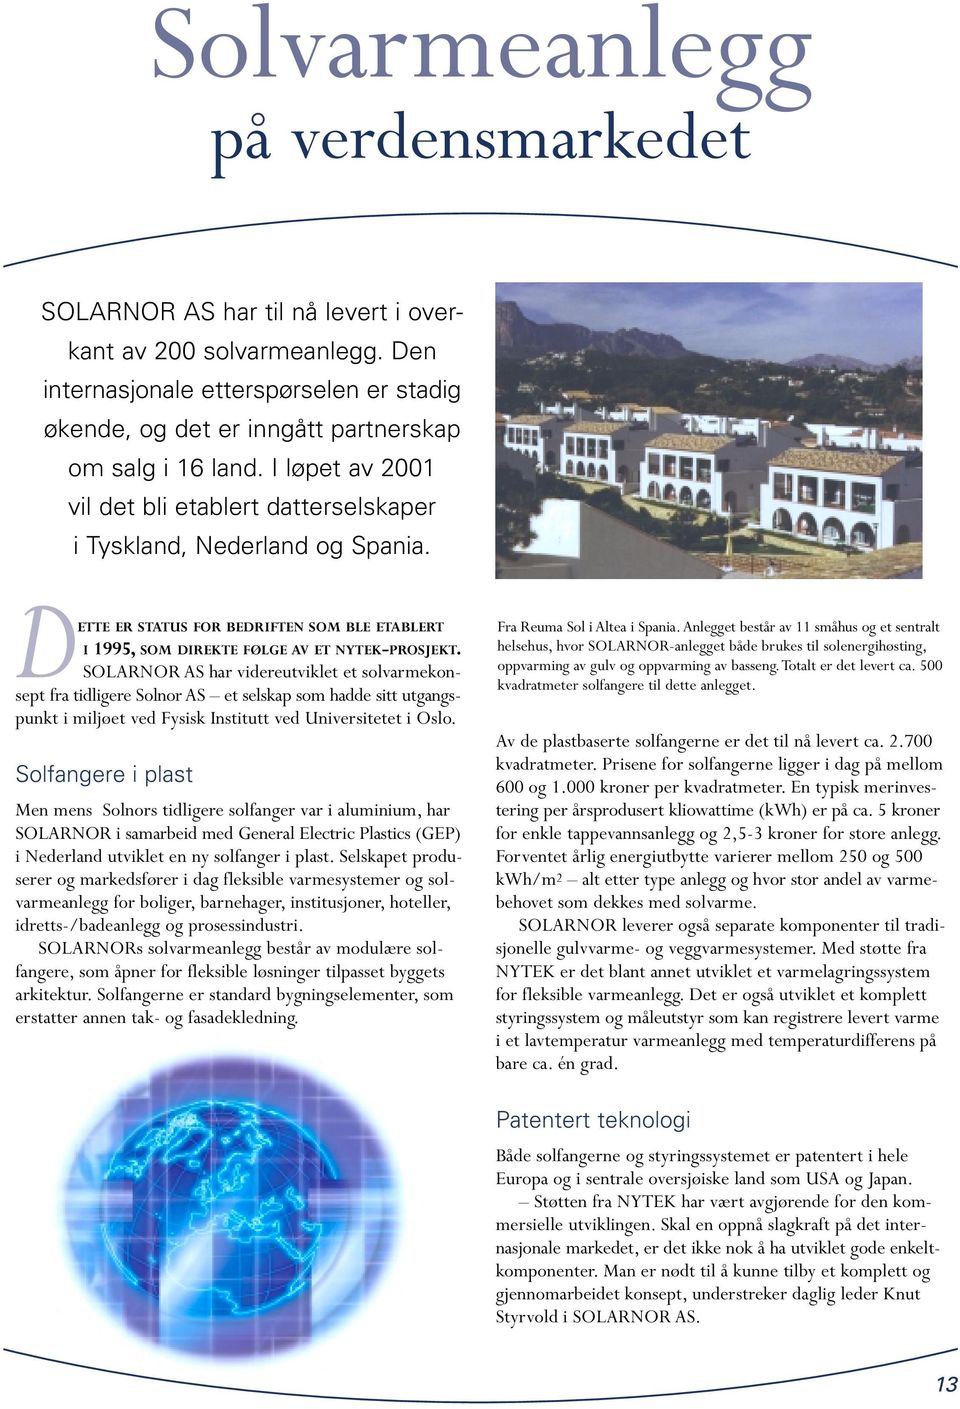 SOLARNOR AS har videreutviklet et solvarmekonsept fra tidligere Solnor AS et selskap som hadde sitt utgangspunkt i miljøet ved Fysisk Institutt ved Universitetet i Oslo.